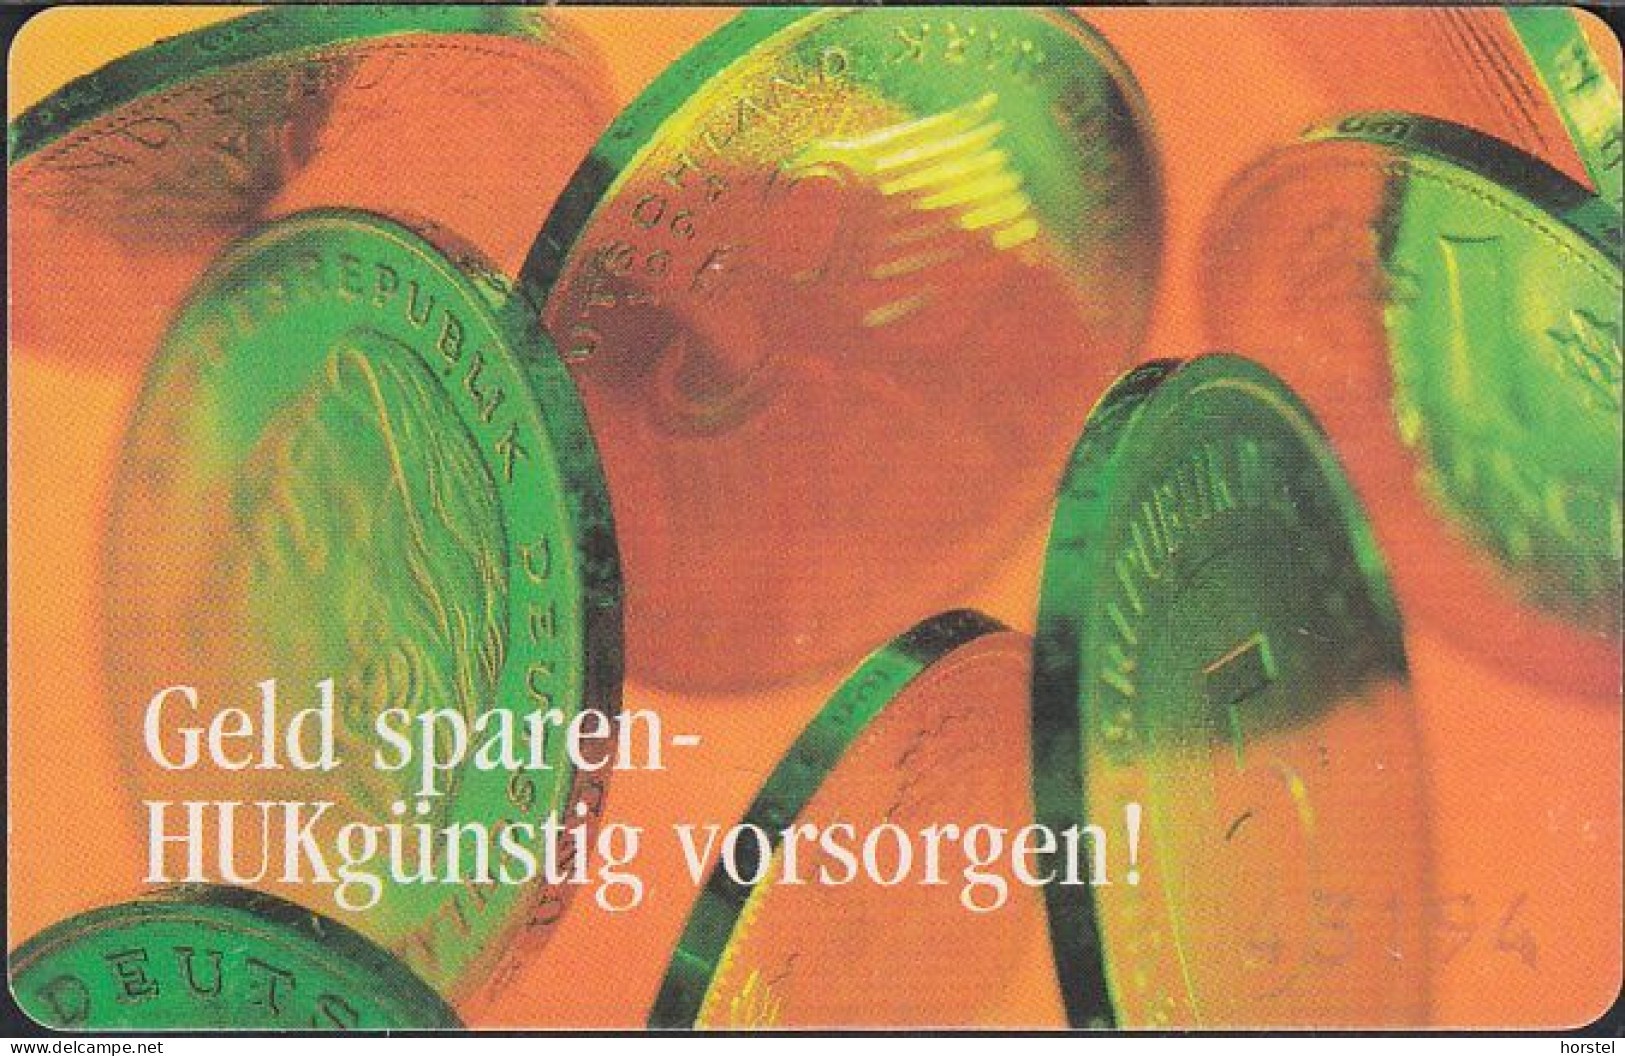 GERMANY S04/97 - HUK - 1,2 Und 5 DM Münzen - Coins - S-Series: Schalterserie Mit Fremdfirmenreklame